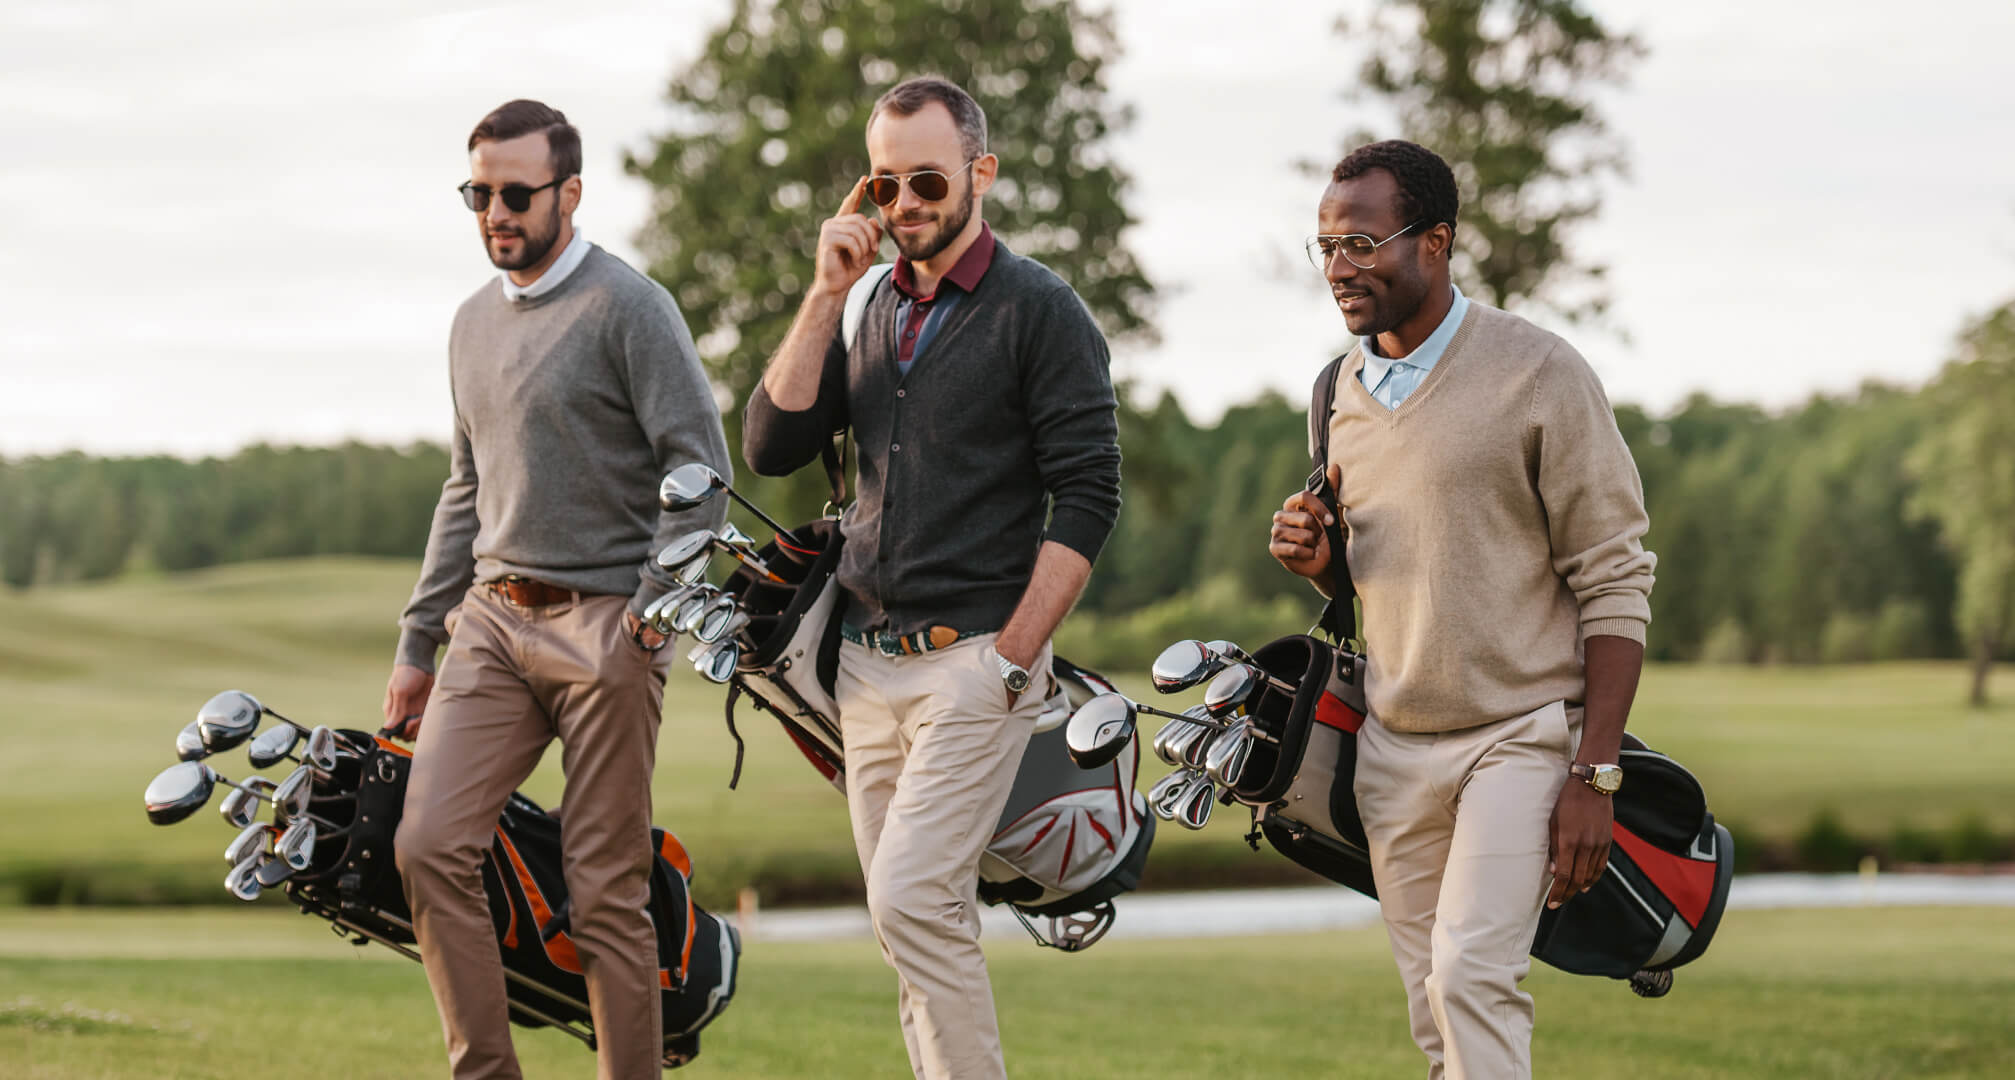 tres personas jugando al golf con gafas de sol y bolsas de golf